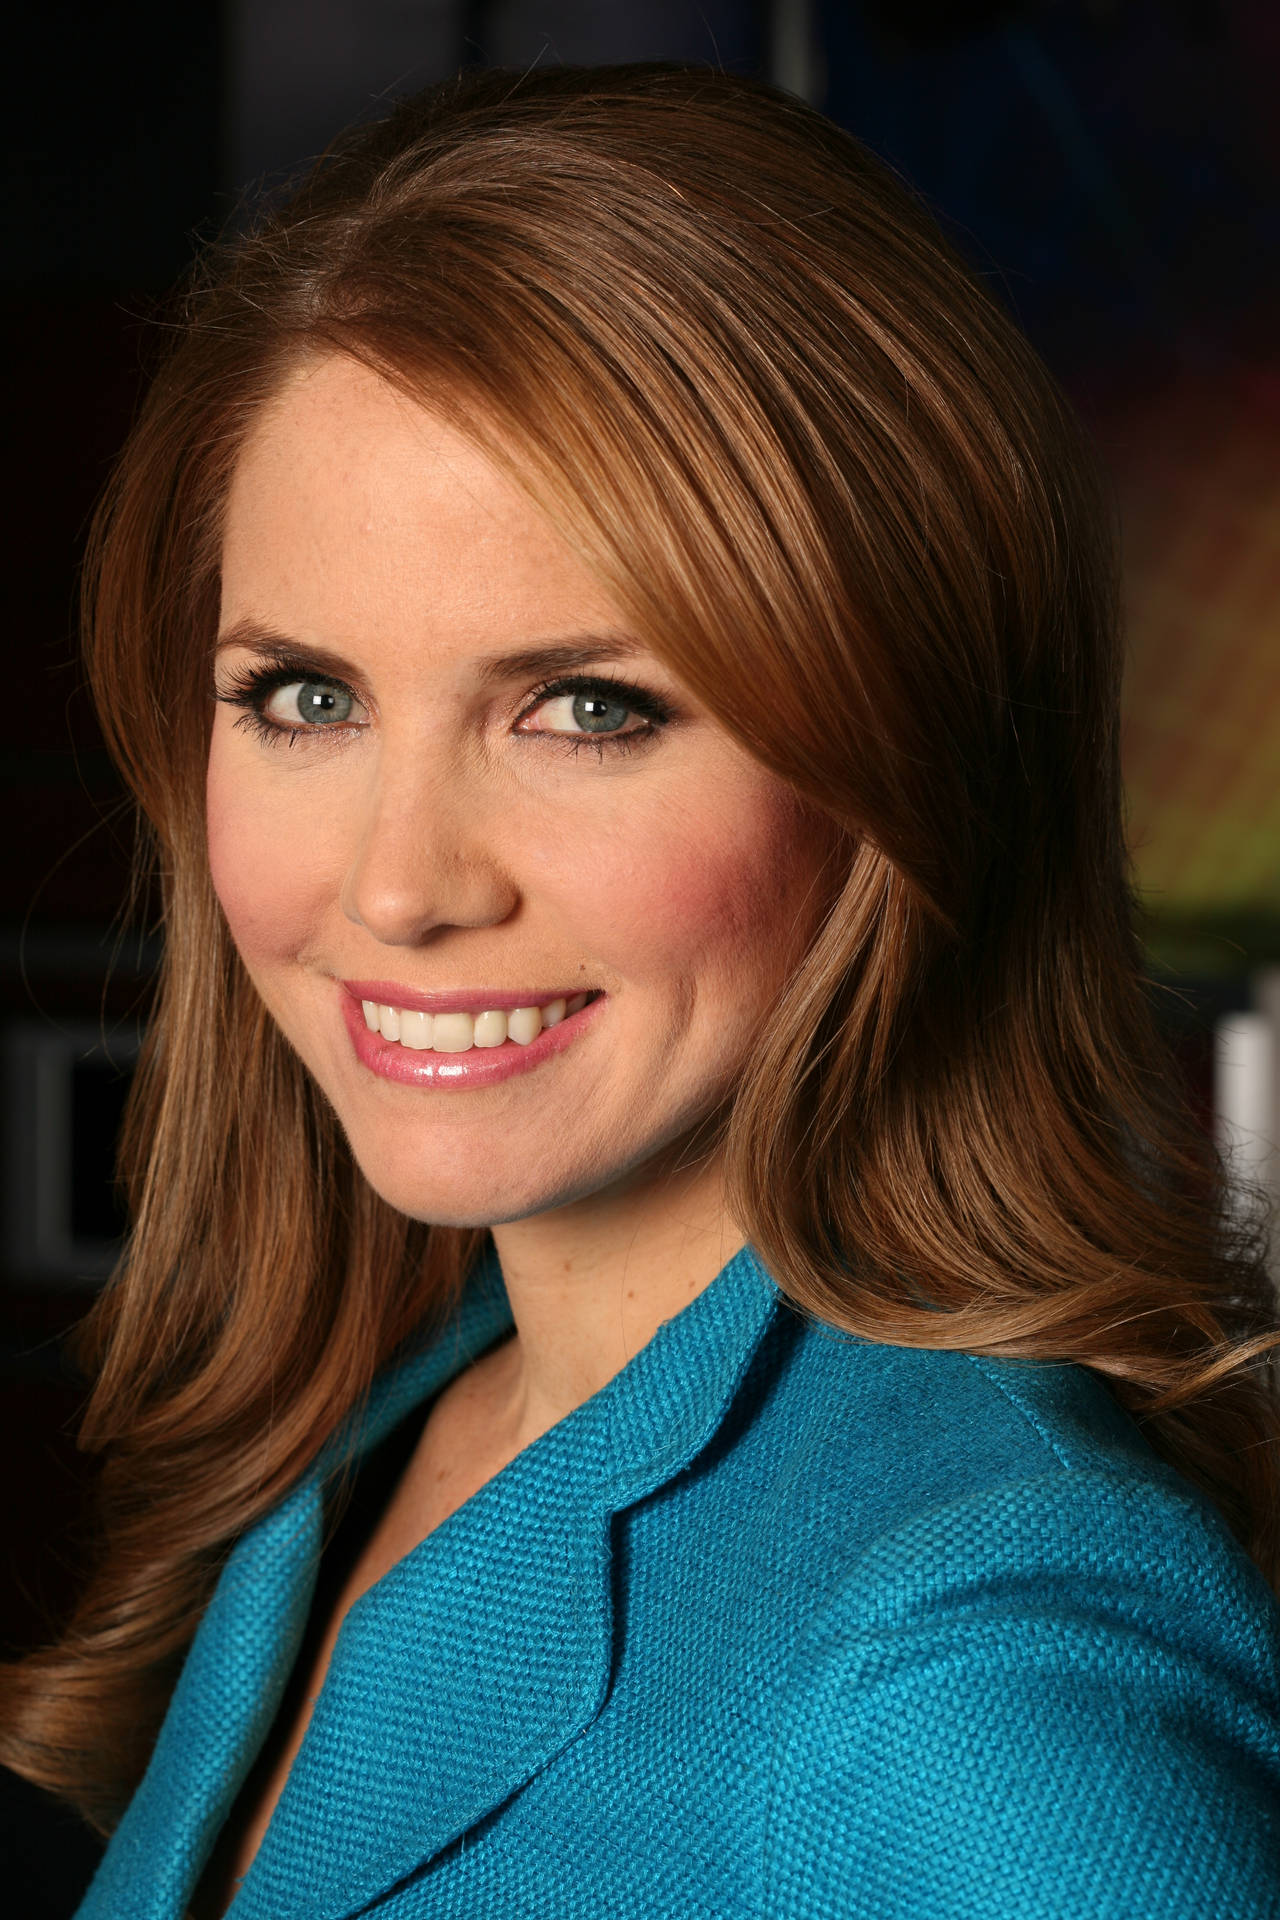 Fox News Jenna Lee Dispatches har et dramatisk udseende med sort, rød og hvid. Wallpaper